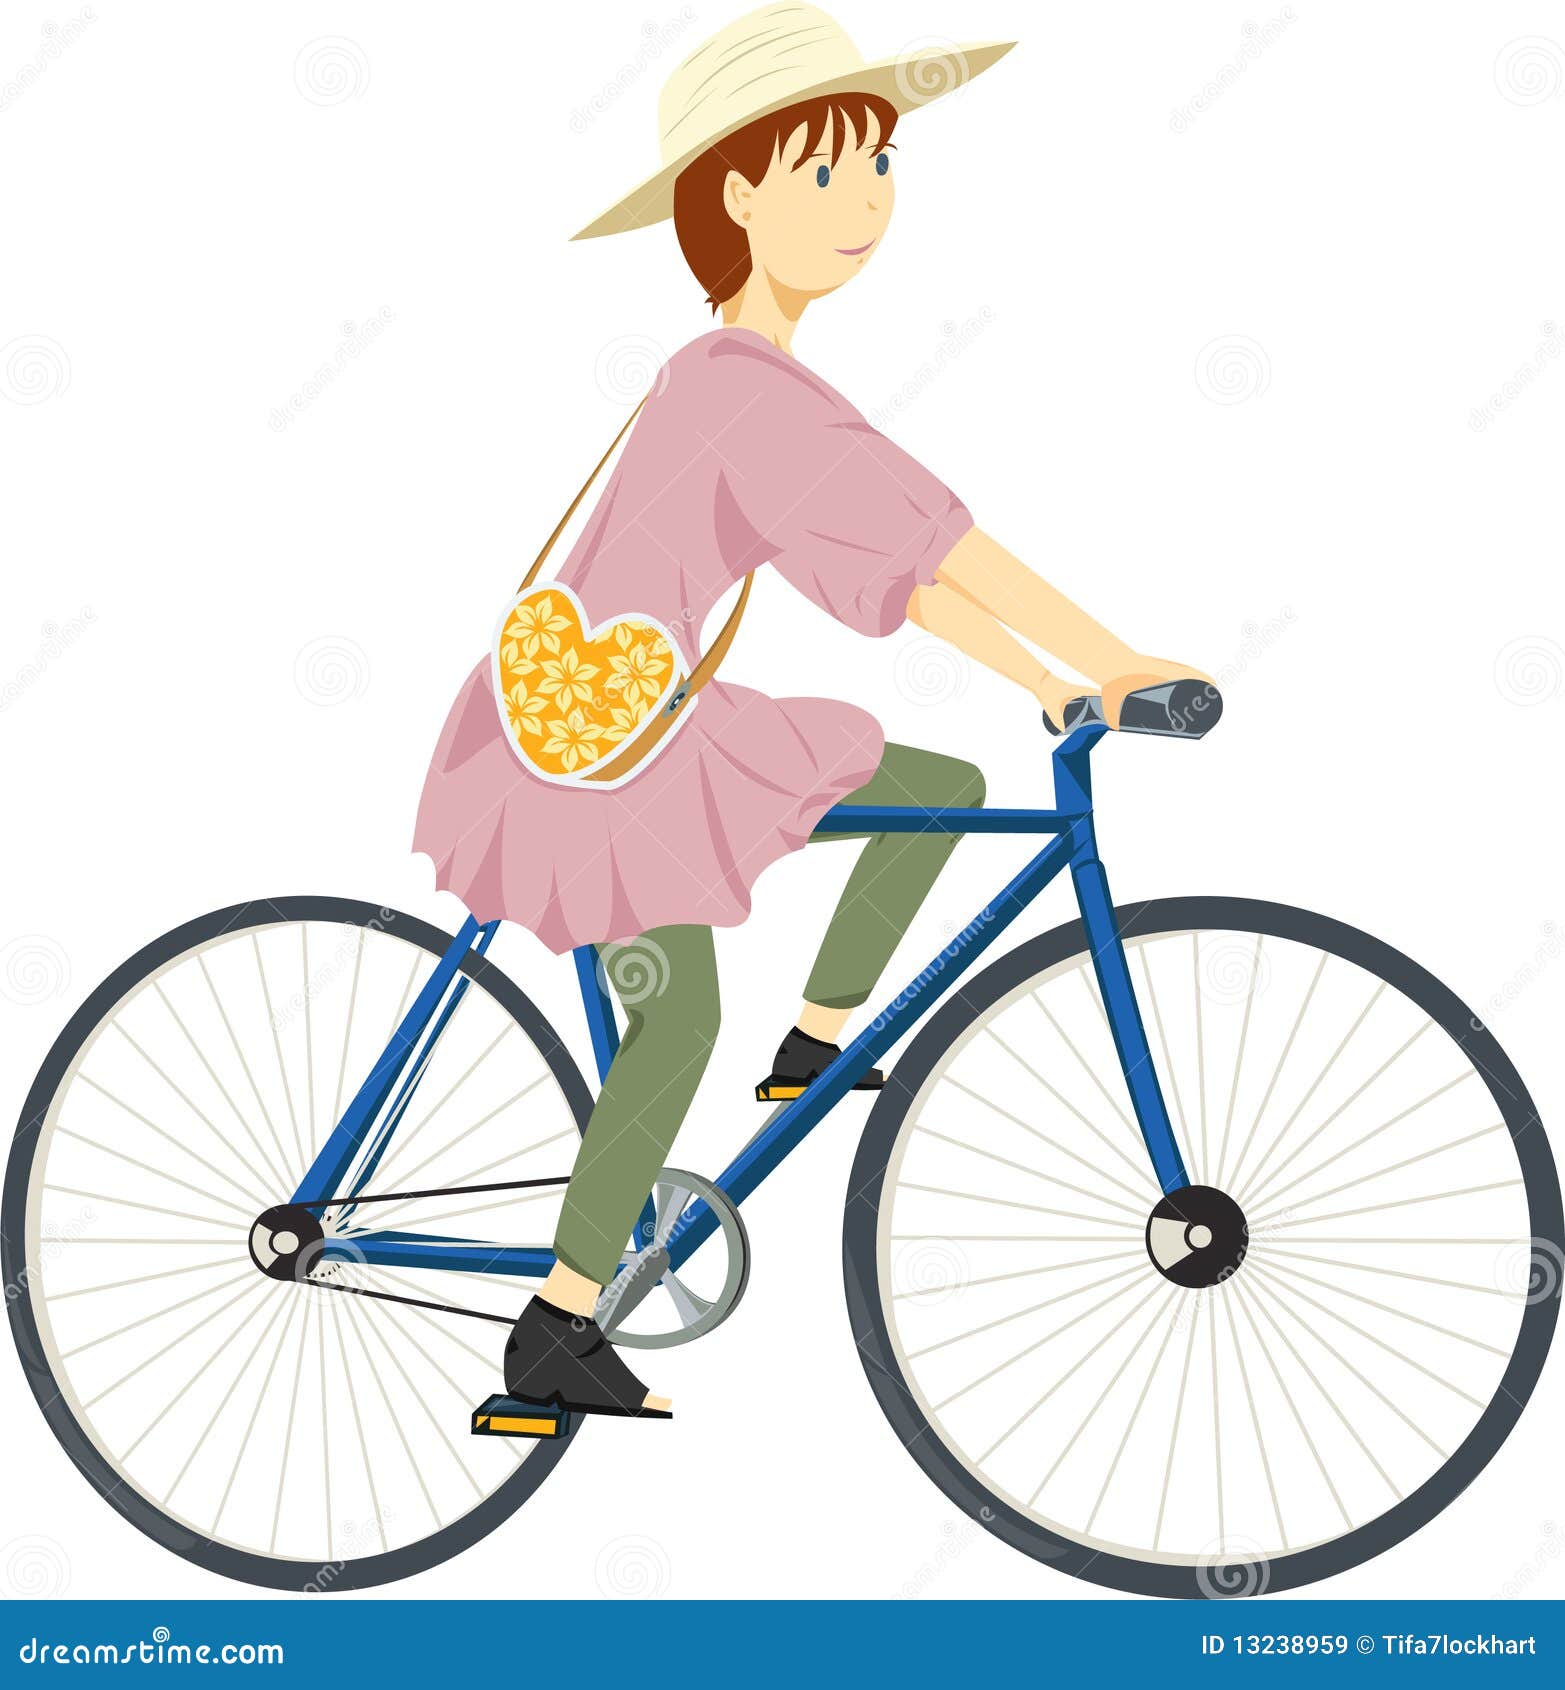 girl on bike clipart - photo #34